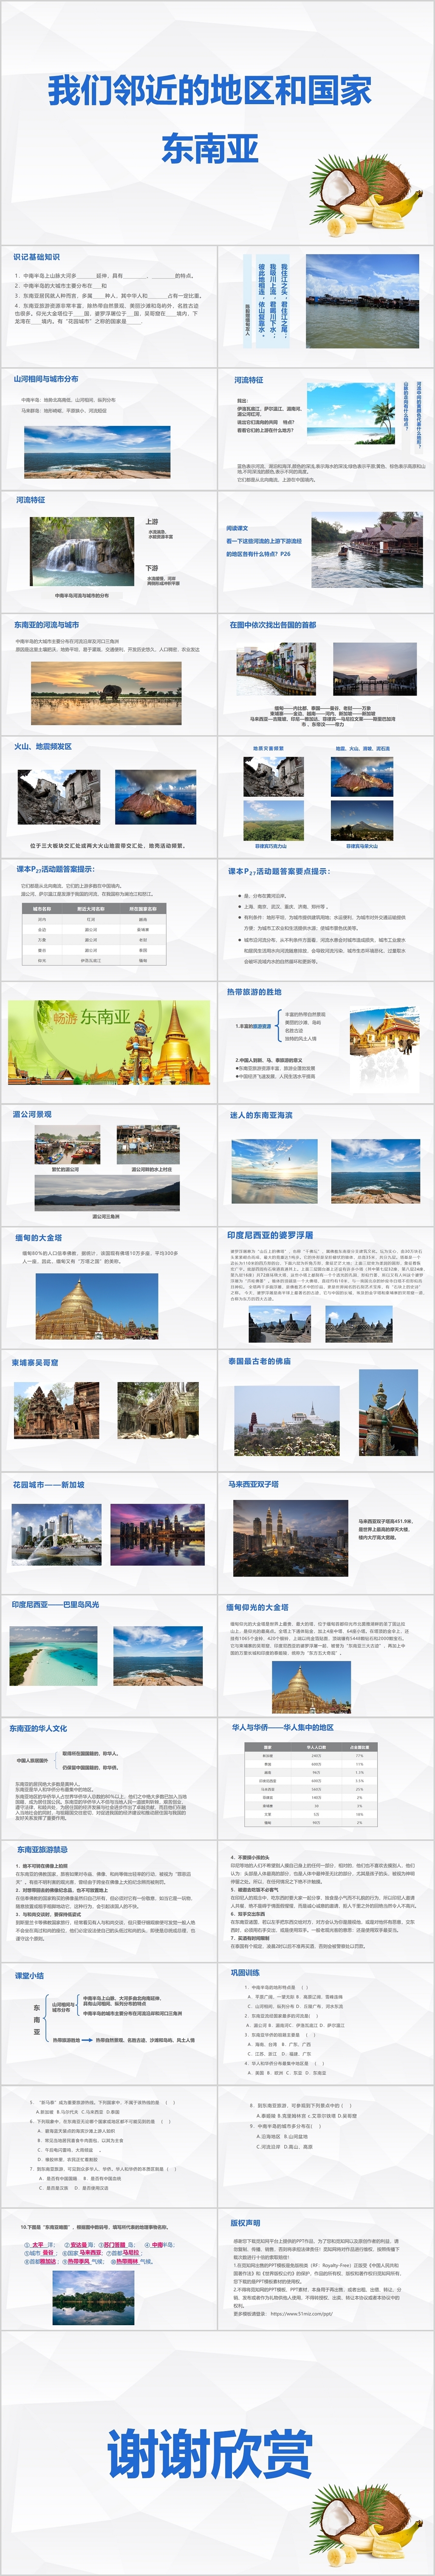 简约旅游行业我们邻近的地区和国家东南亚风景介绍ppt模板东南亚ppt